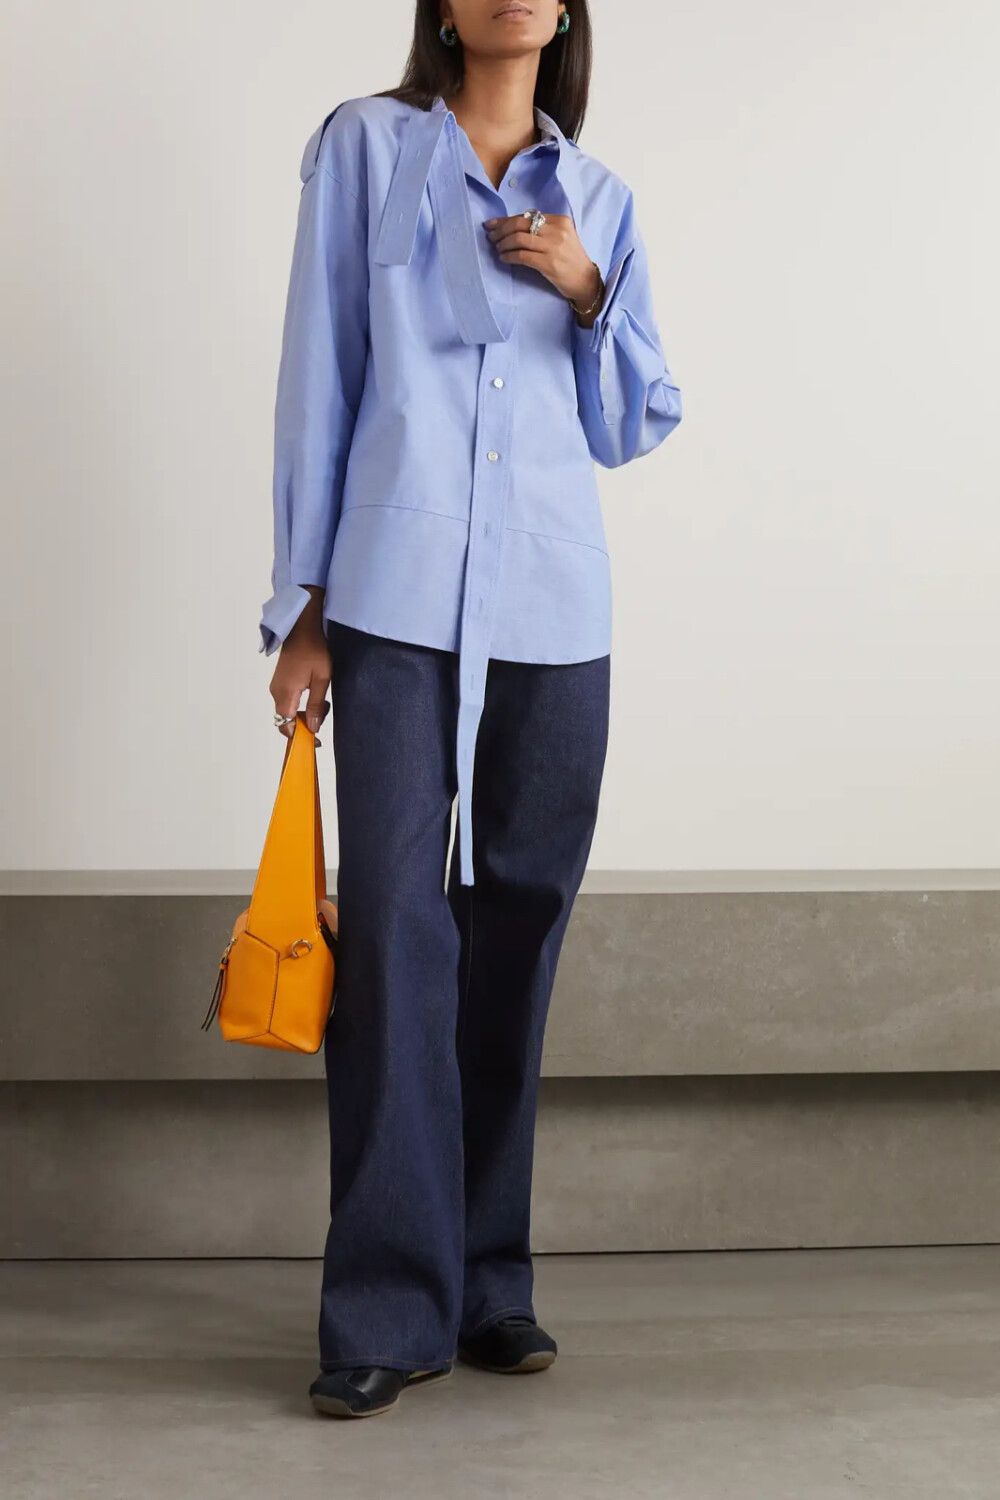 Meryll Rogge 这款衬衫以浅蓝色纯棉钱布雷布制成，从衣领垂落至门襟中央的长带和“脱落”的立挺袖口释放出前卫的解构酷感。不妨束入牛仔裤或阔腿裤穿着。